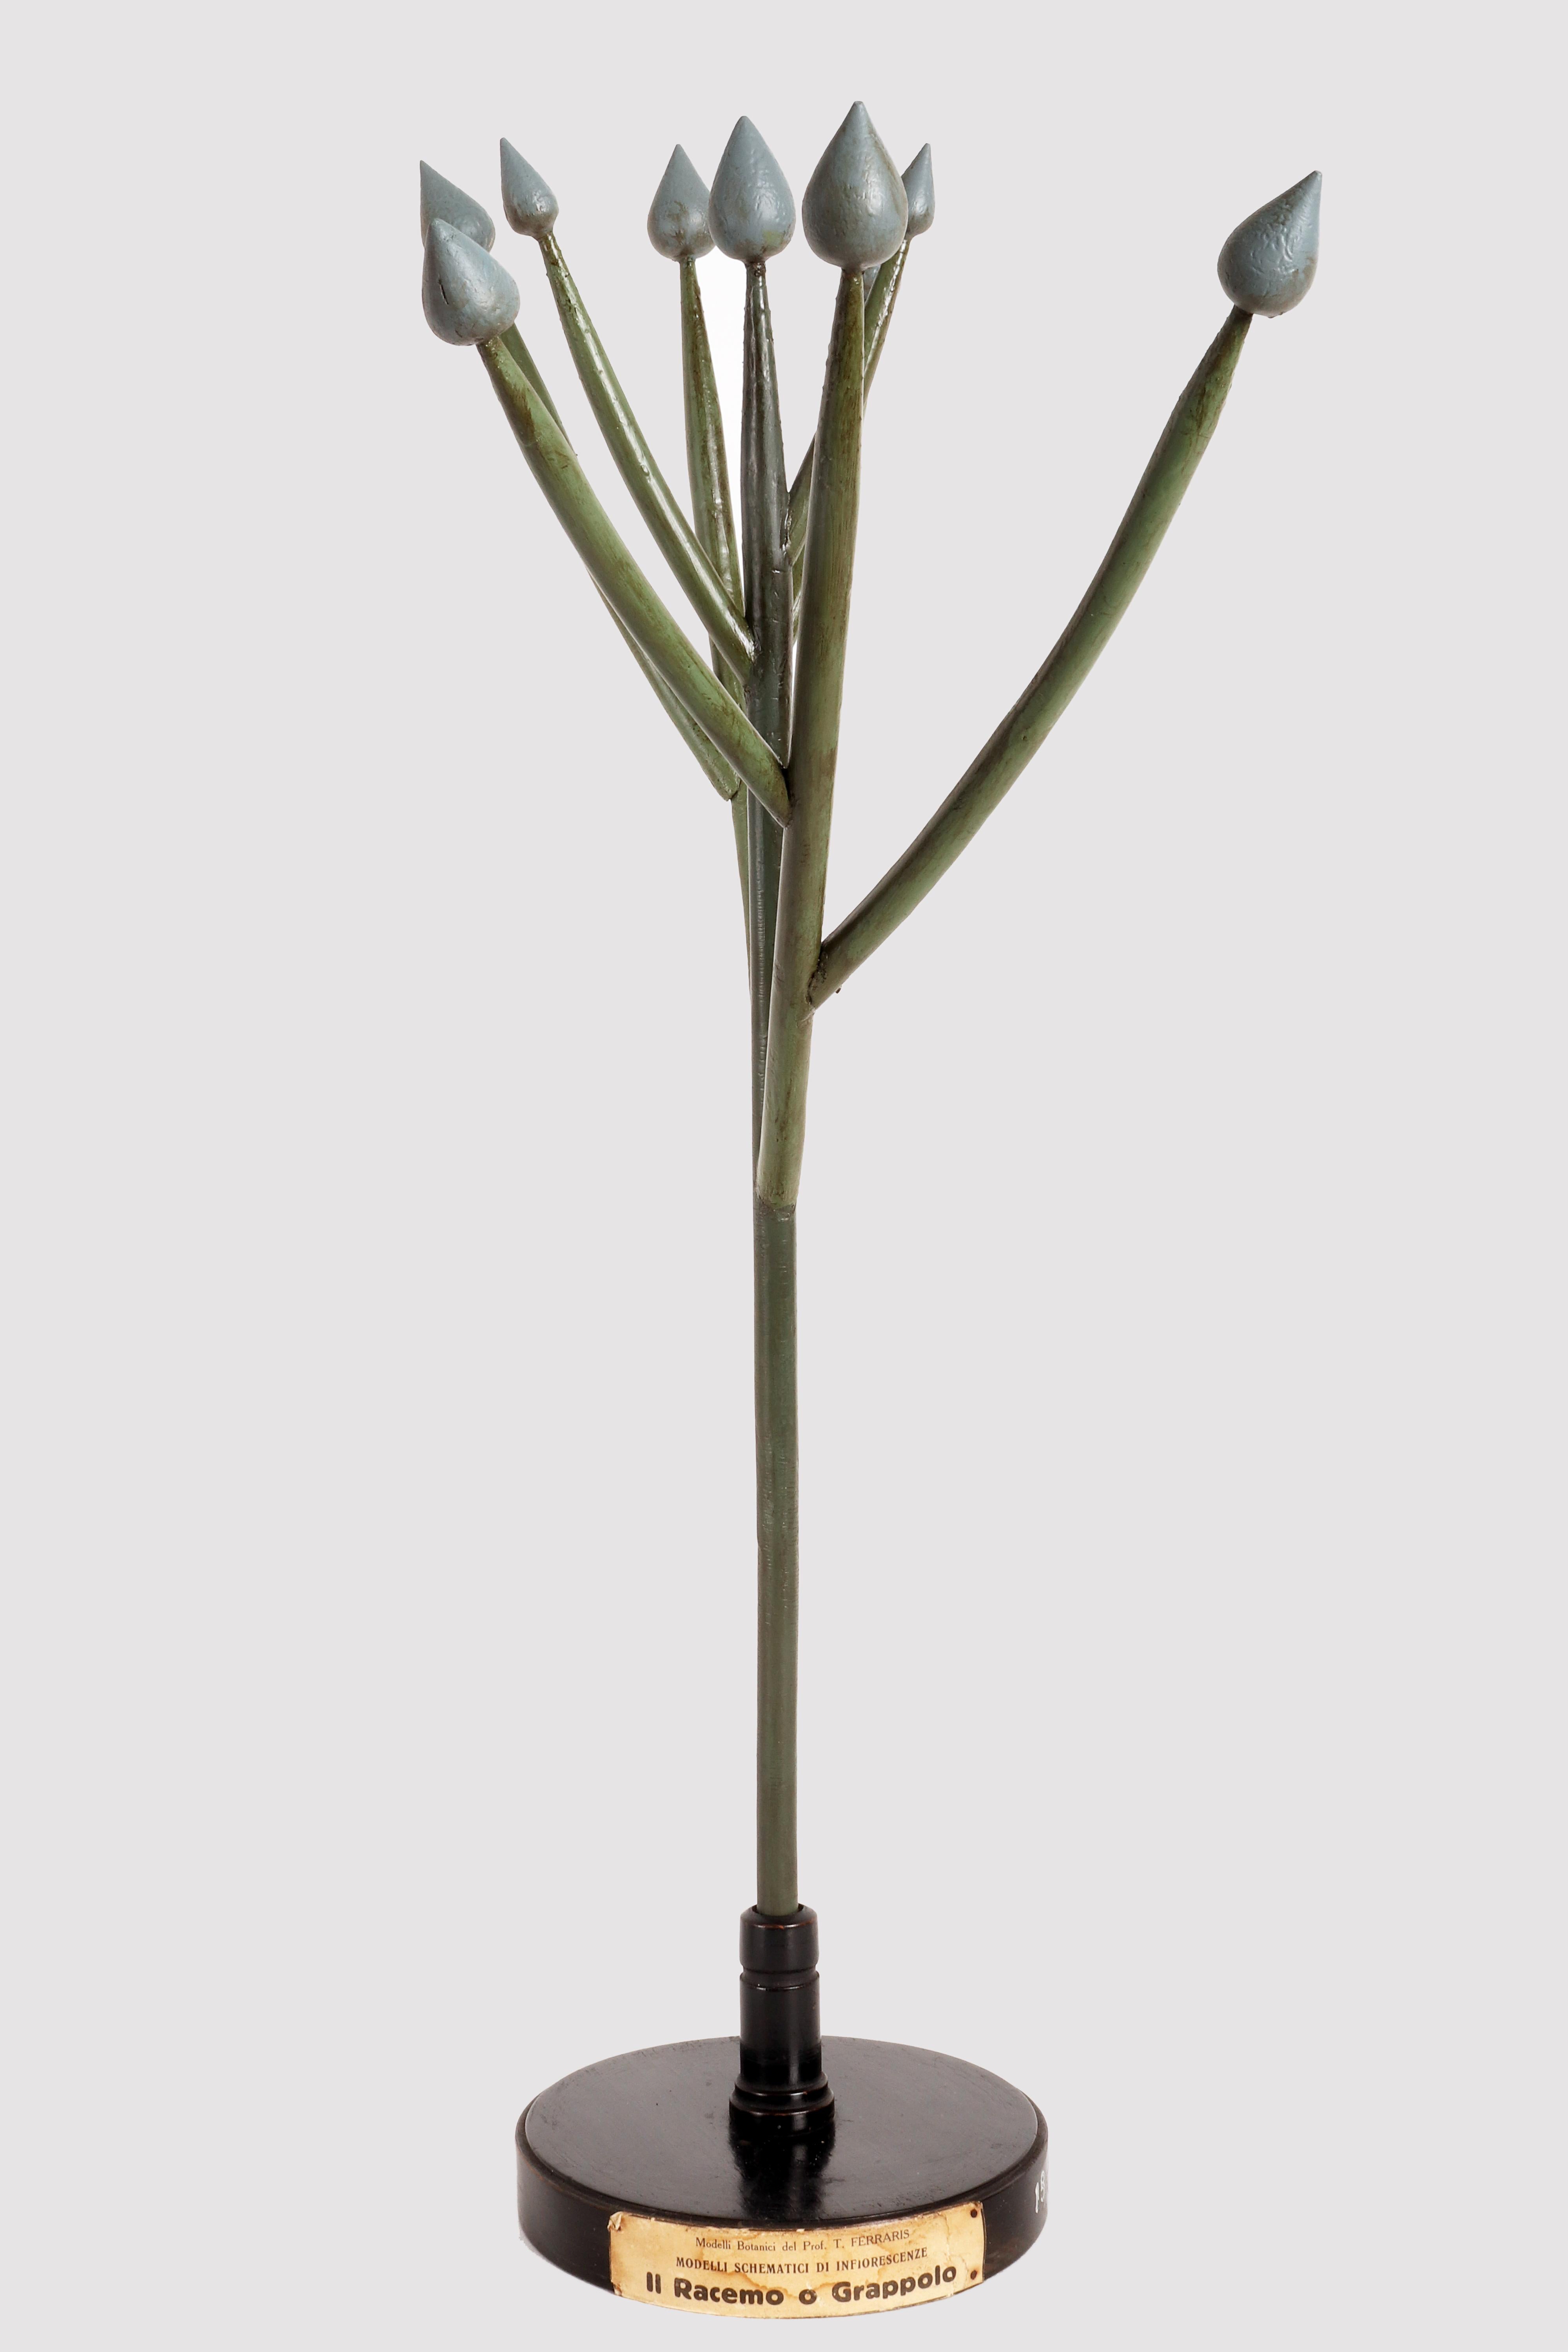 Ein seltenes botanisches Schemamodell von Prof. T. Ferraris, didaktischer Gebrauch, einer Art von Blütenstandsexemplar, der Raceme oder Traube, hergestellt mit handbemalten farbigen Edelsteinen aus Gips, hölzernen Zweigen und bemalten